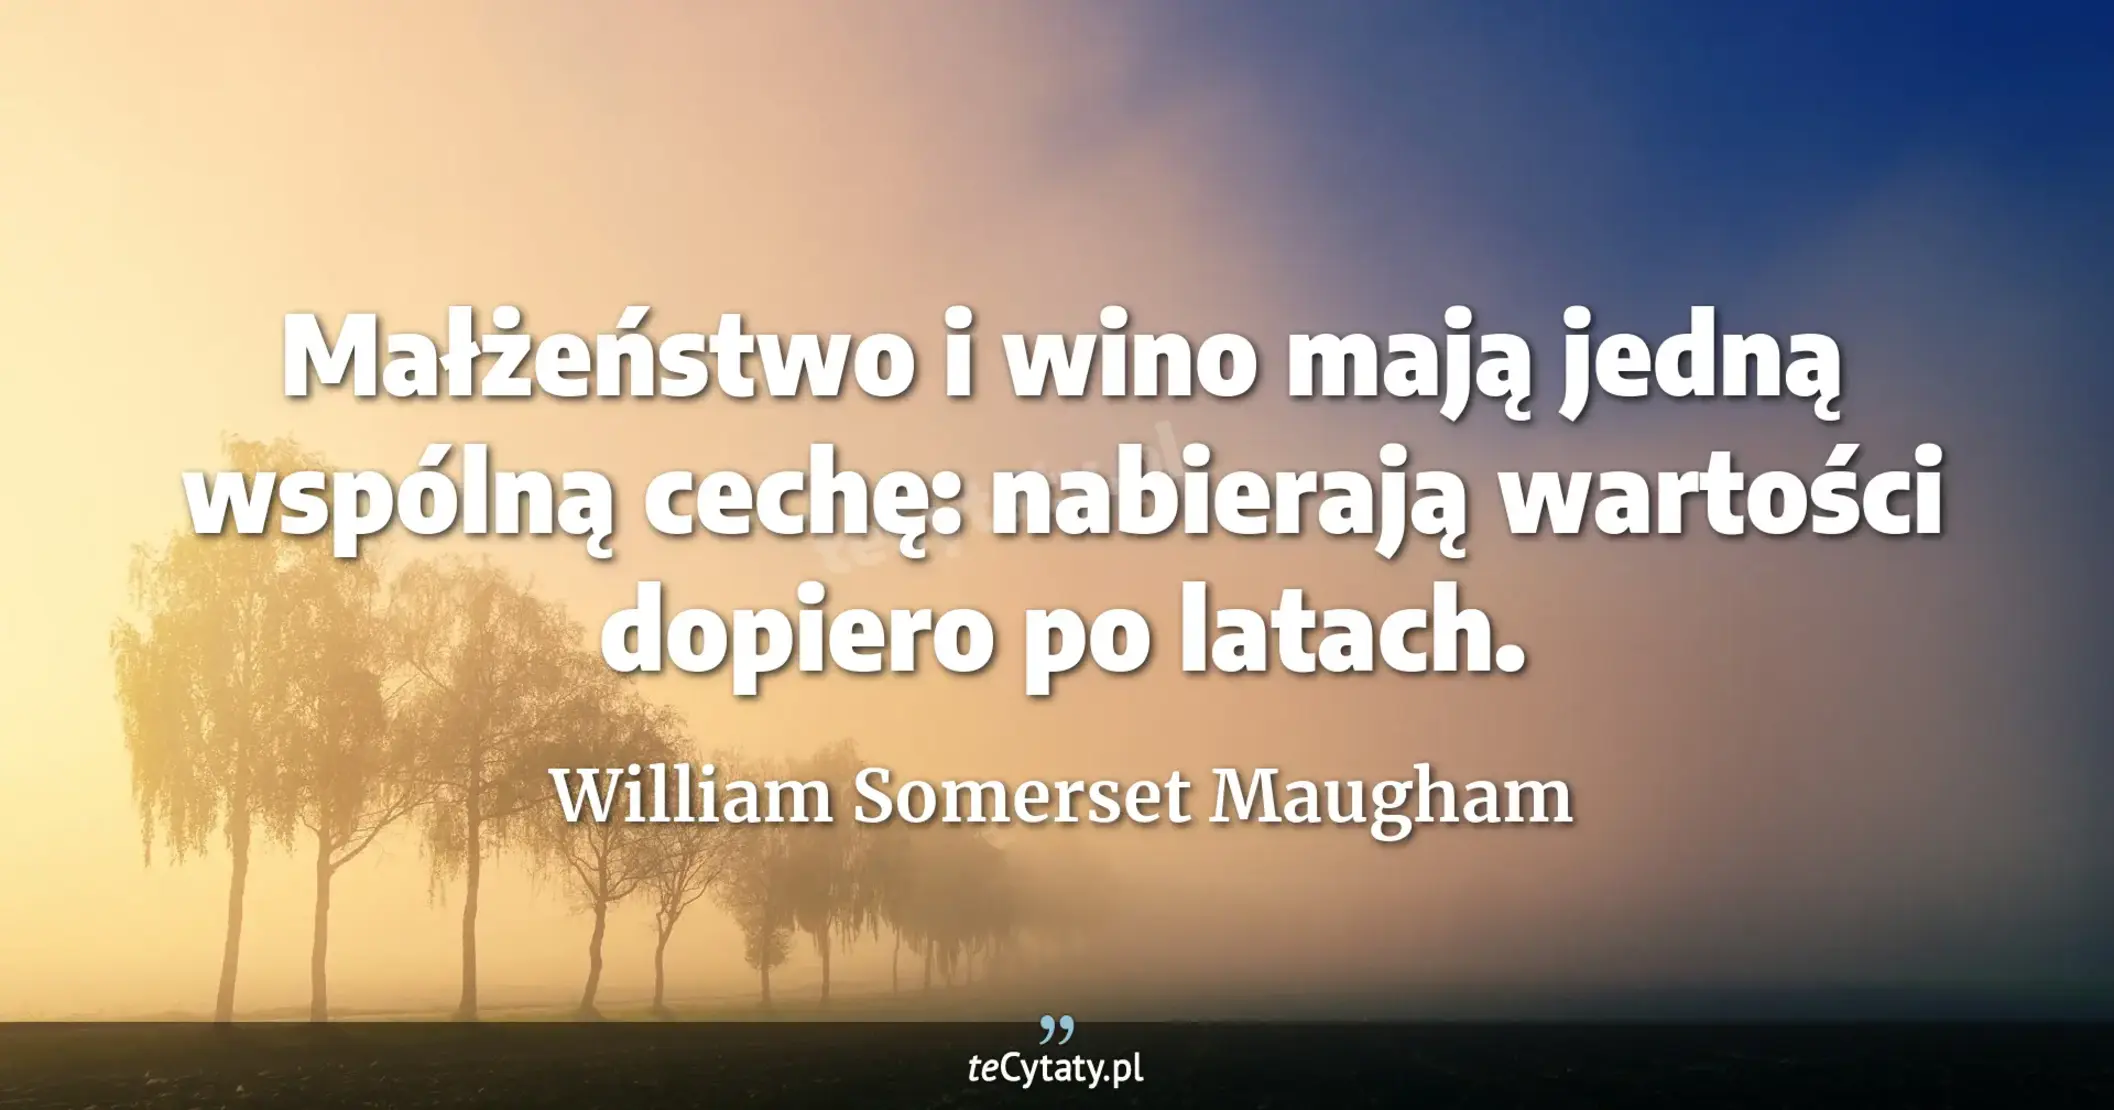 Małżeństwo i wino mają jedną wspólną cechę: nabierają wartości dopiero po latach. - William Somerset Maugham